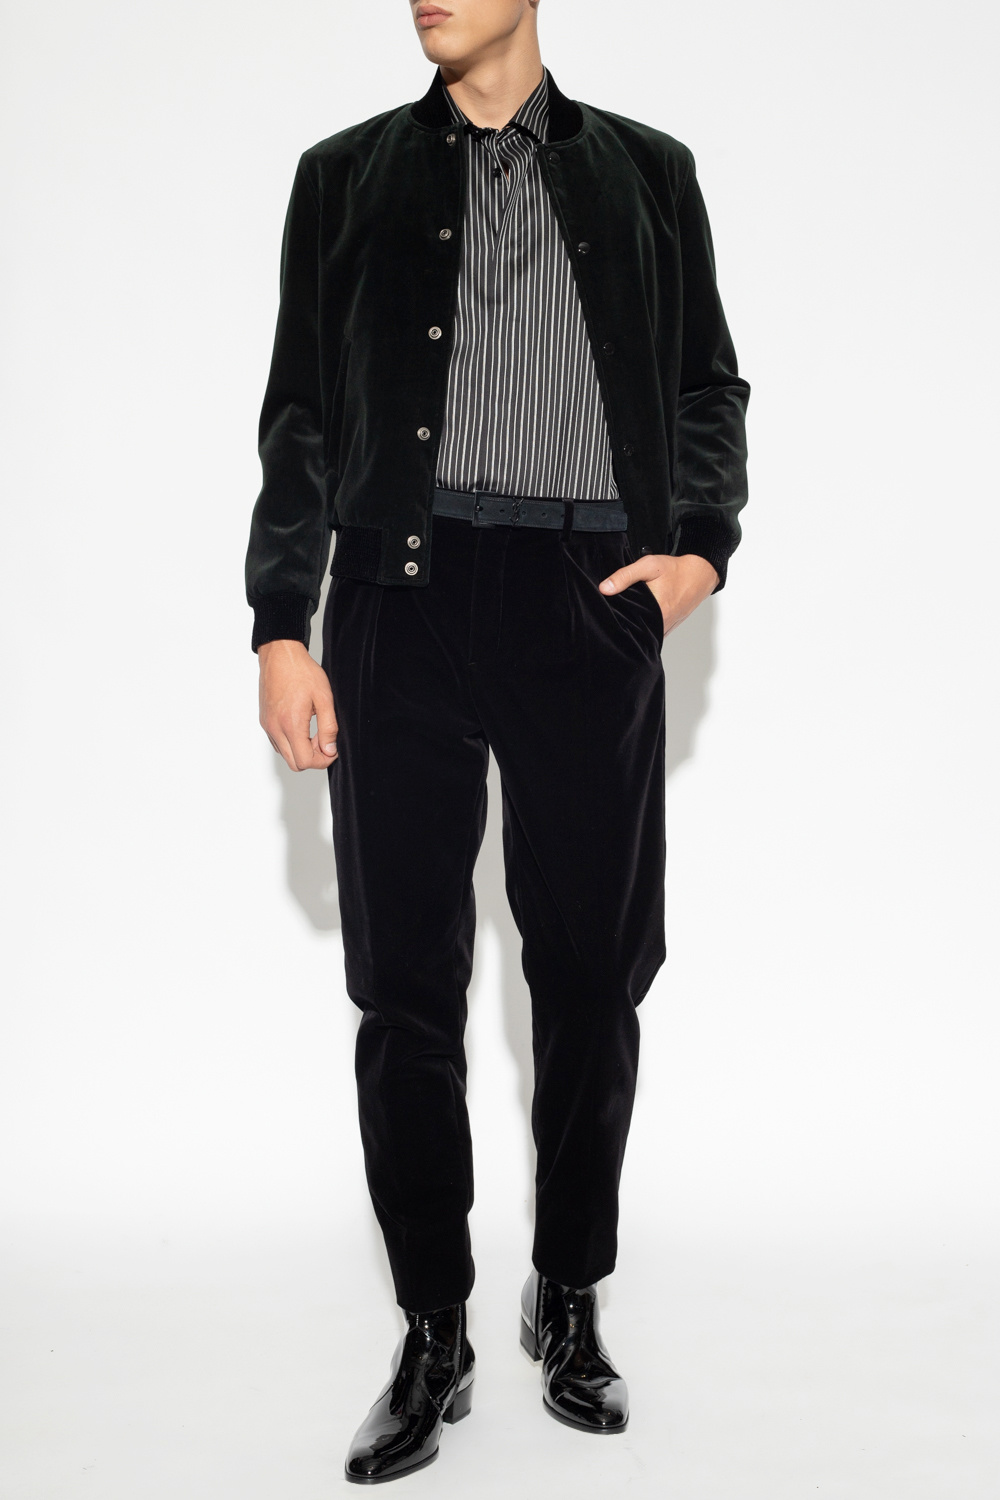 Saint Laurent bolso bandolera saint laurent loulou modelo mediano en cuero acolchado con motivos de espigas negro